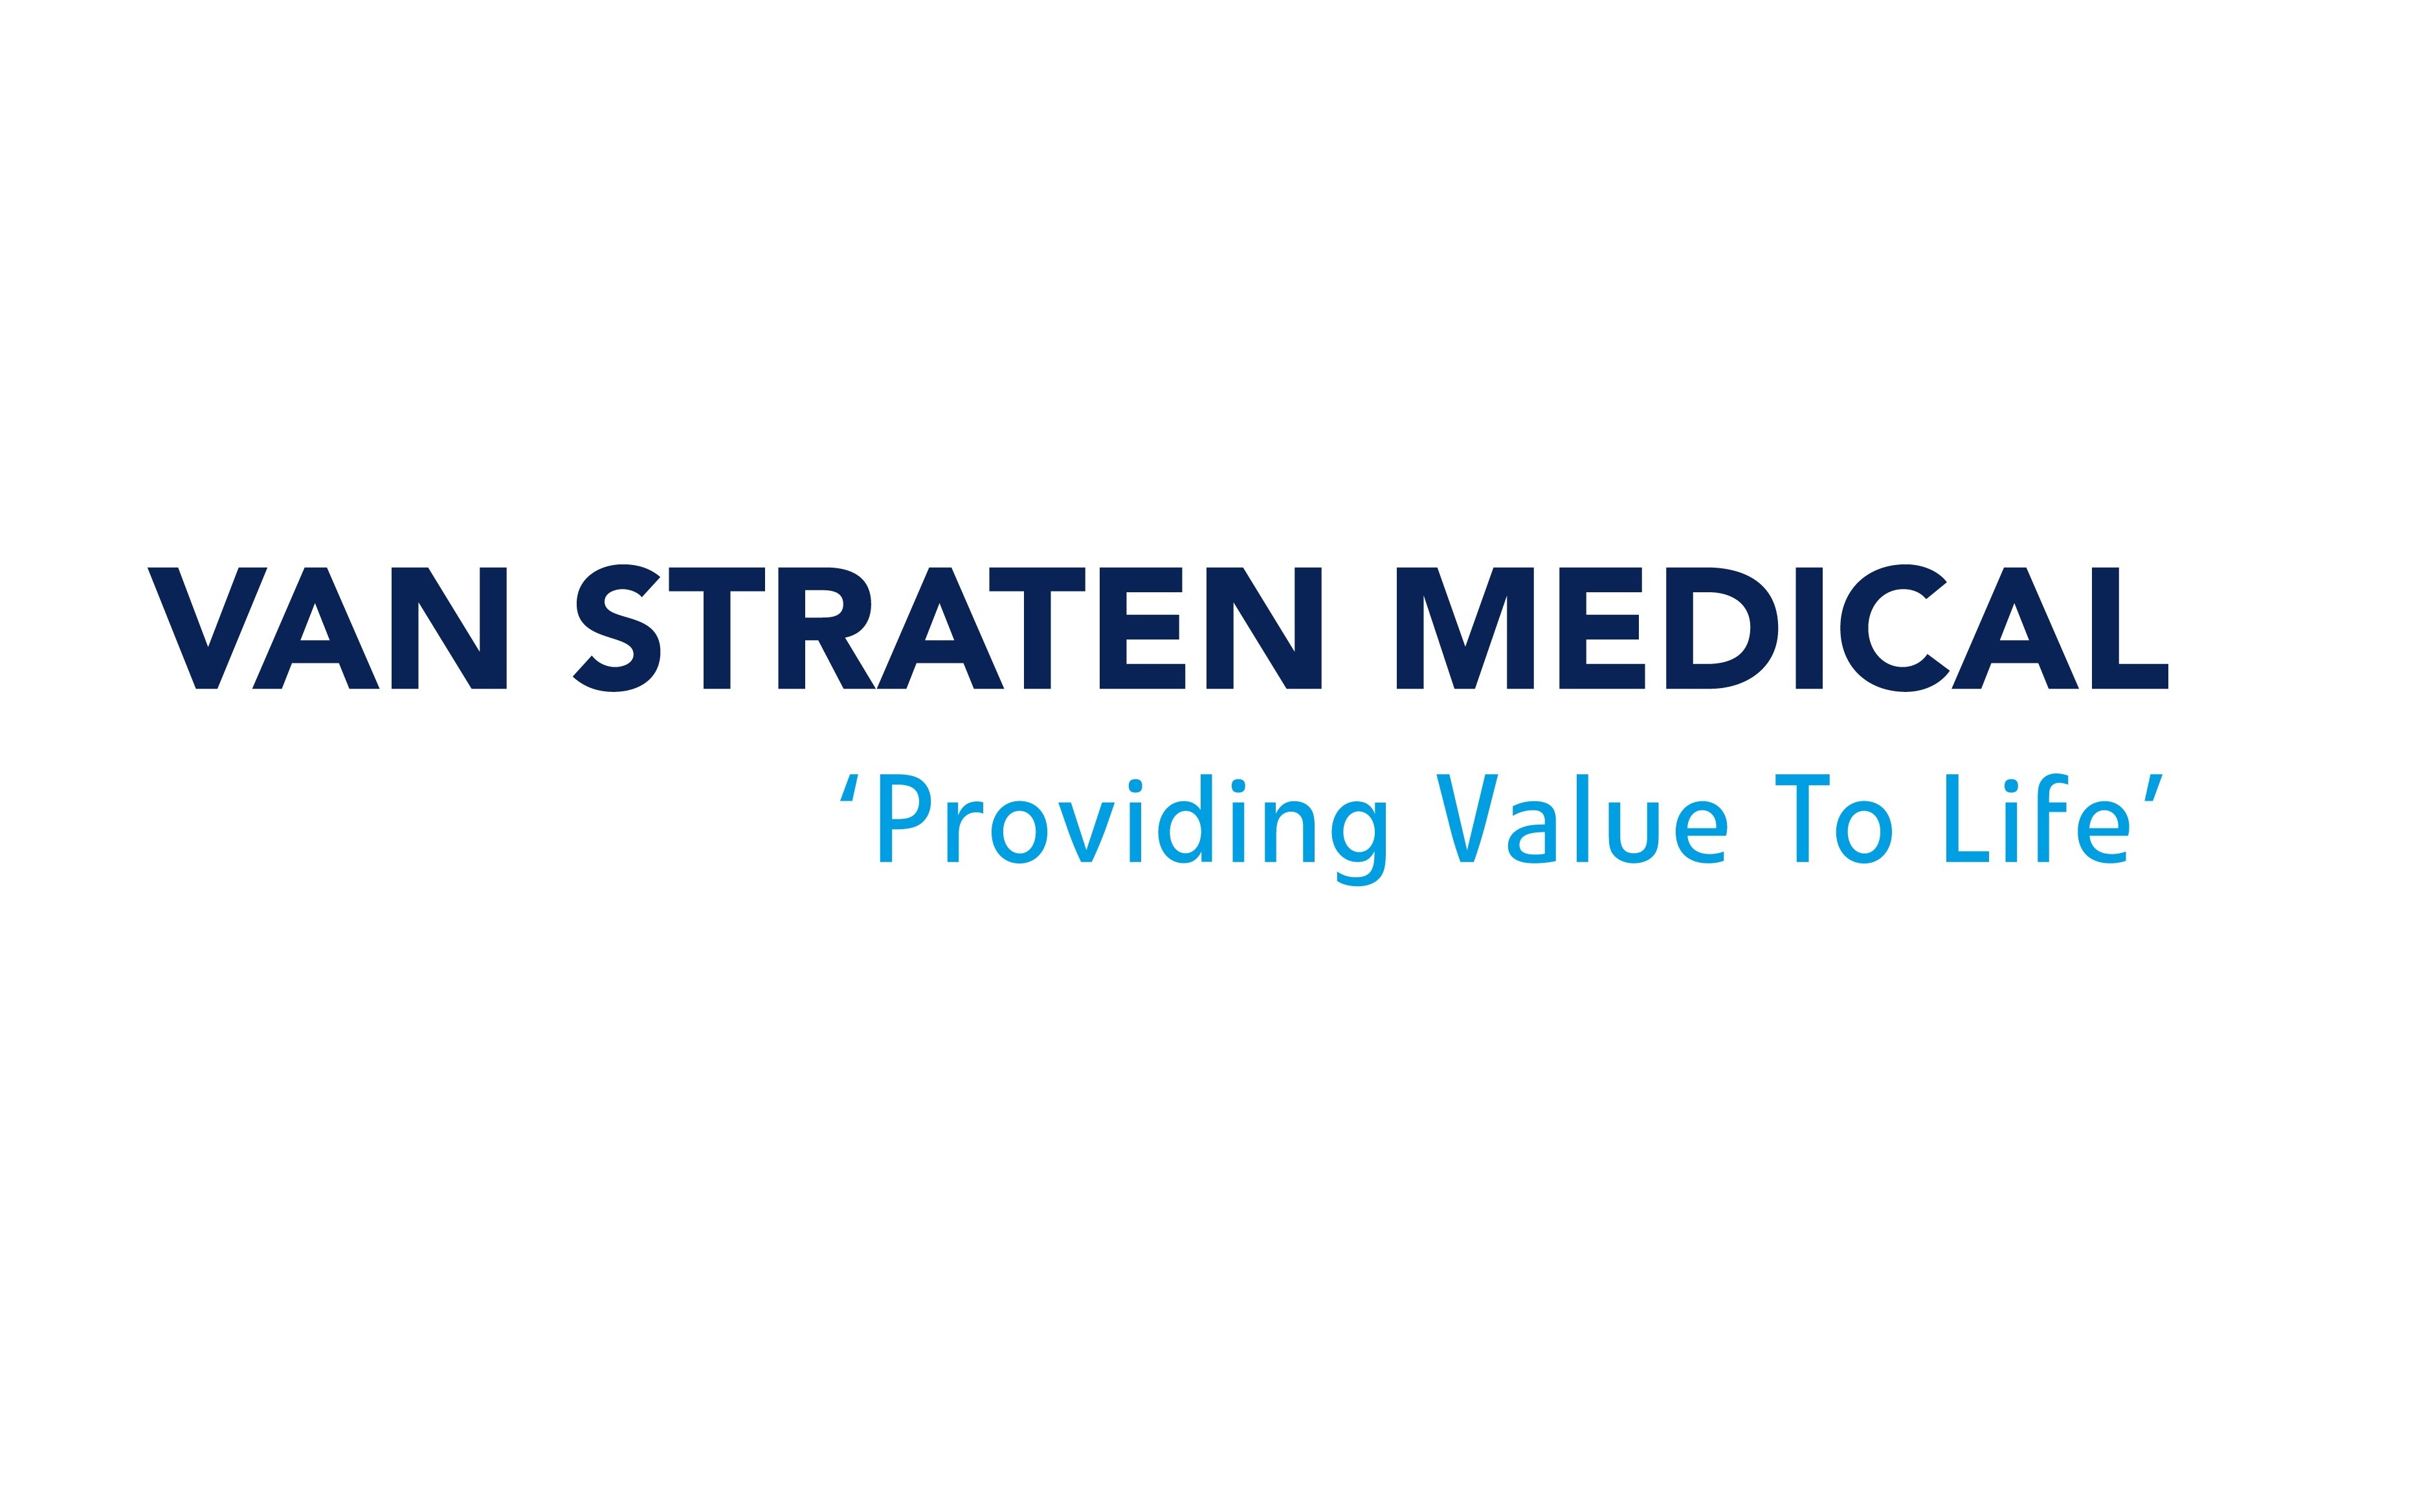 Van Straten Medical | Fourtop ICT